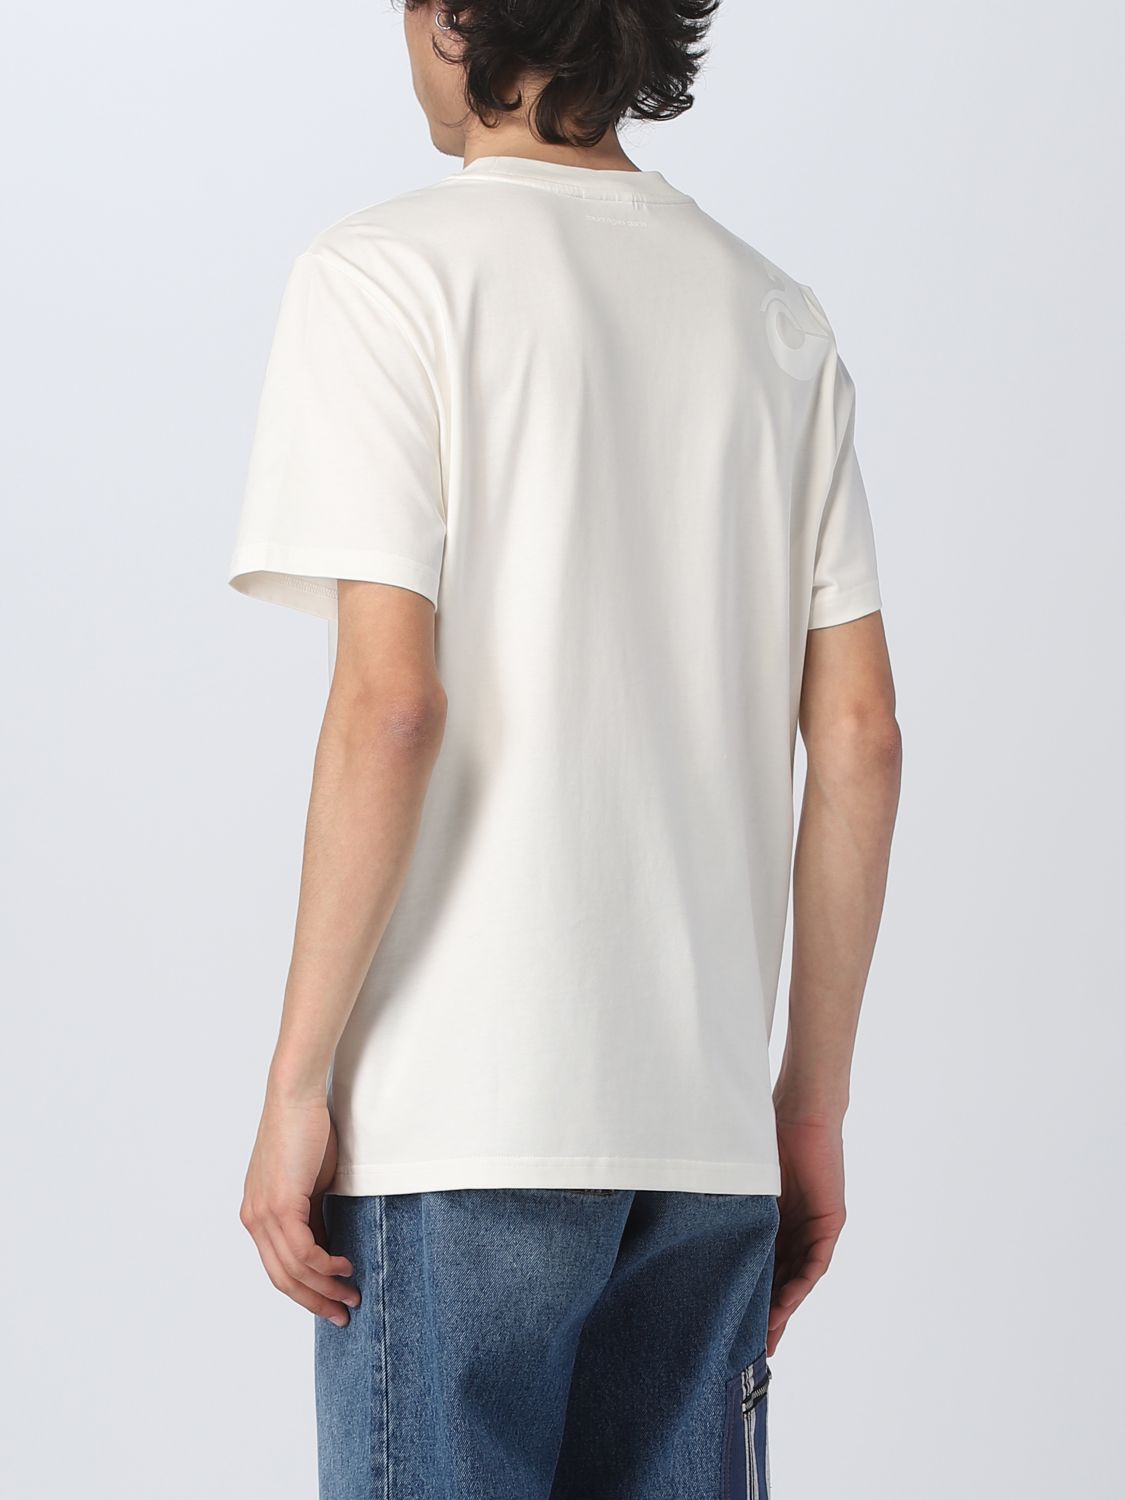 T-shirt Courrèges: T-shirt Courrèges homme blanc 3